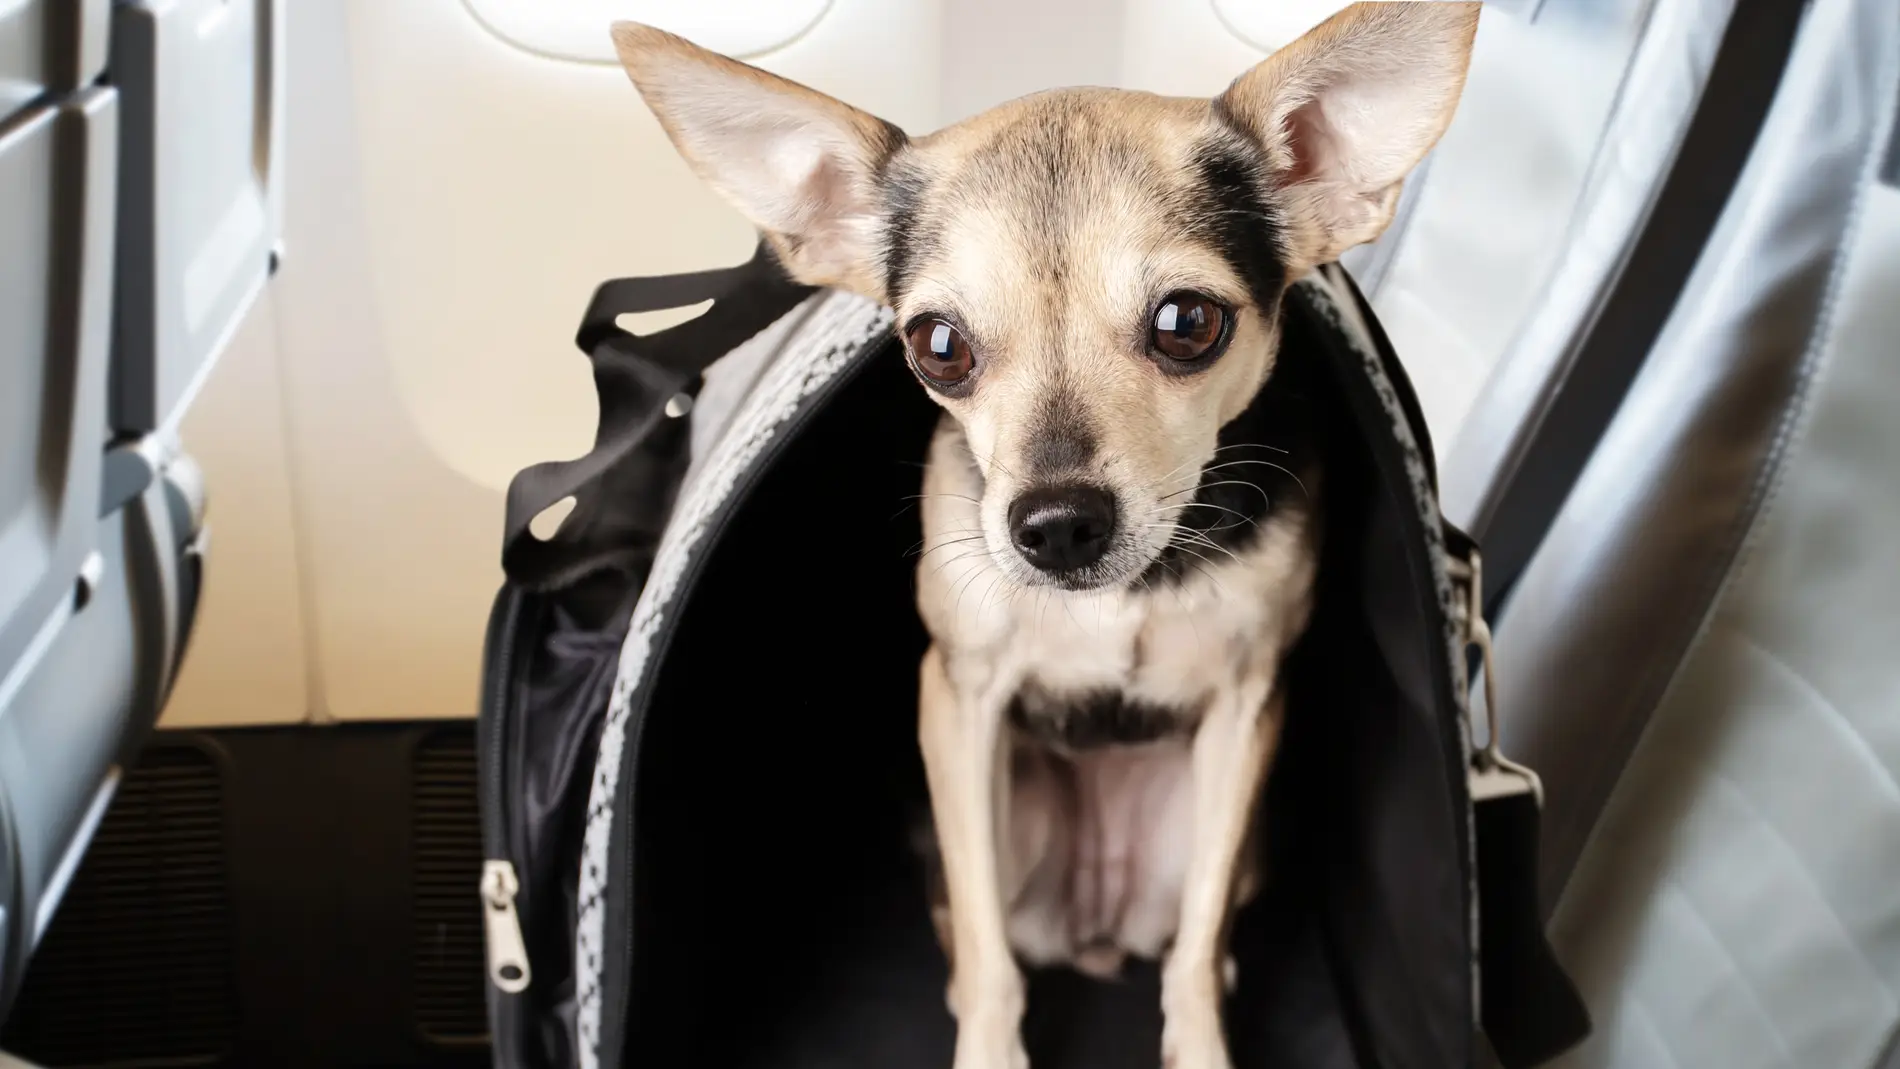 Perro en el asiento del avión durante un vuelo